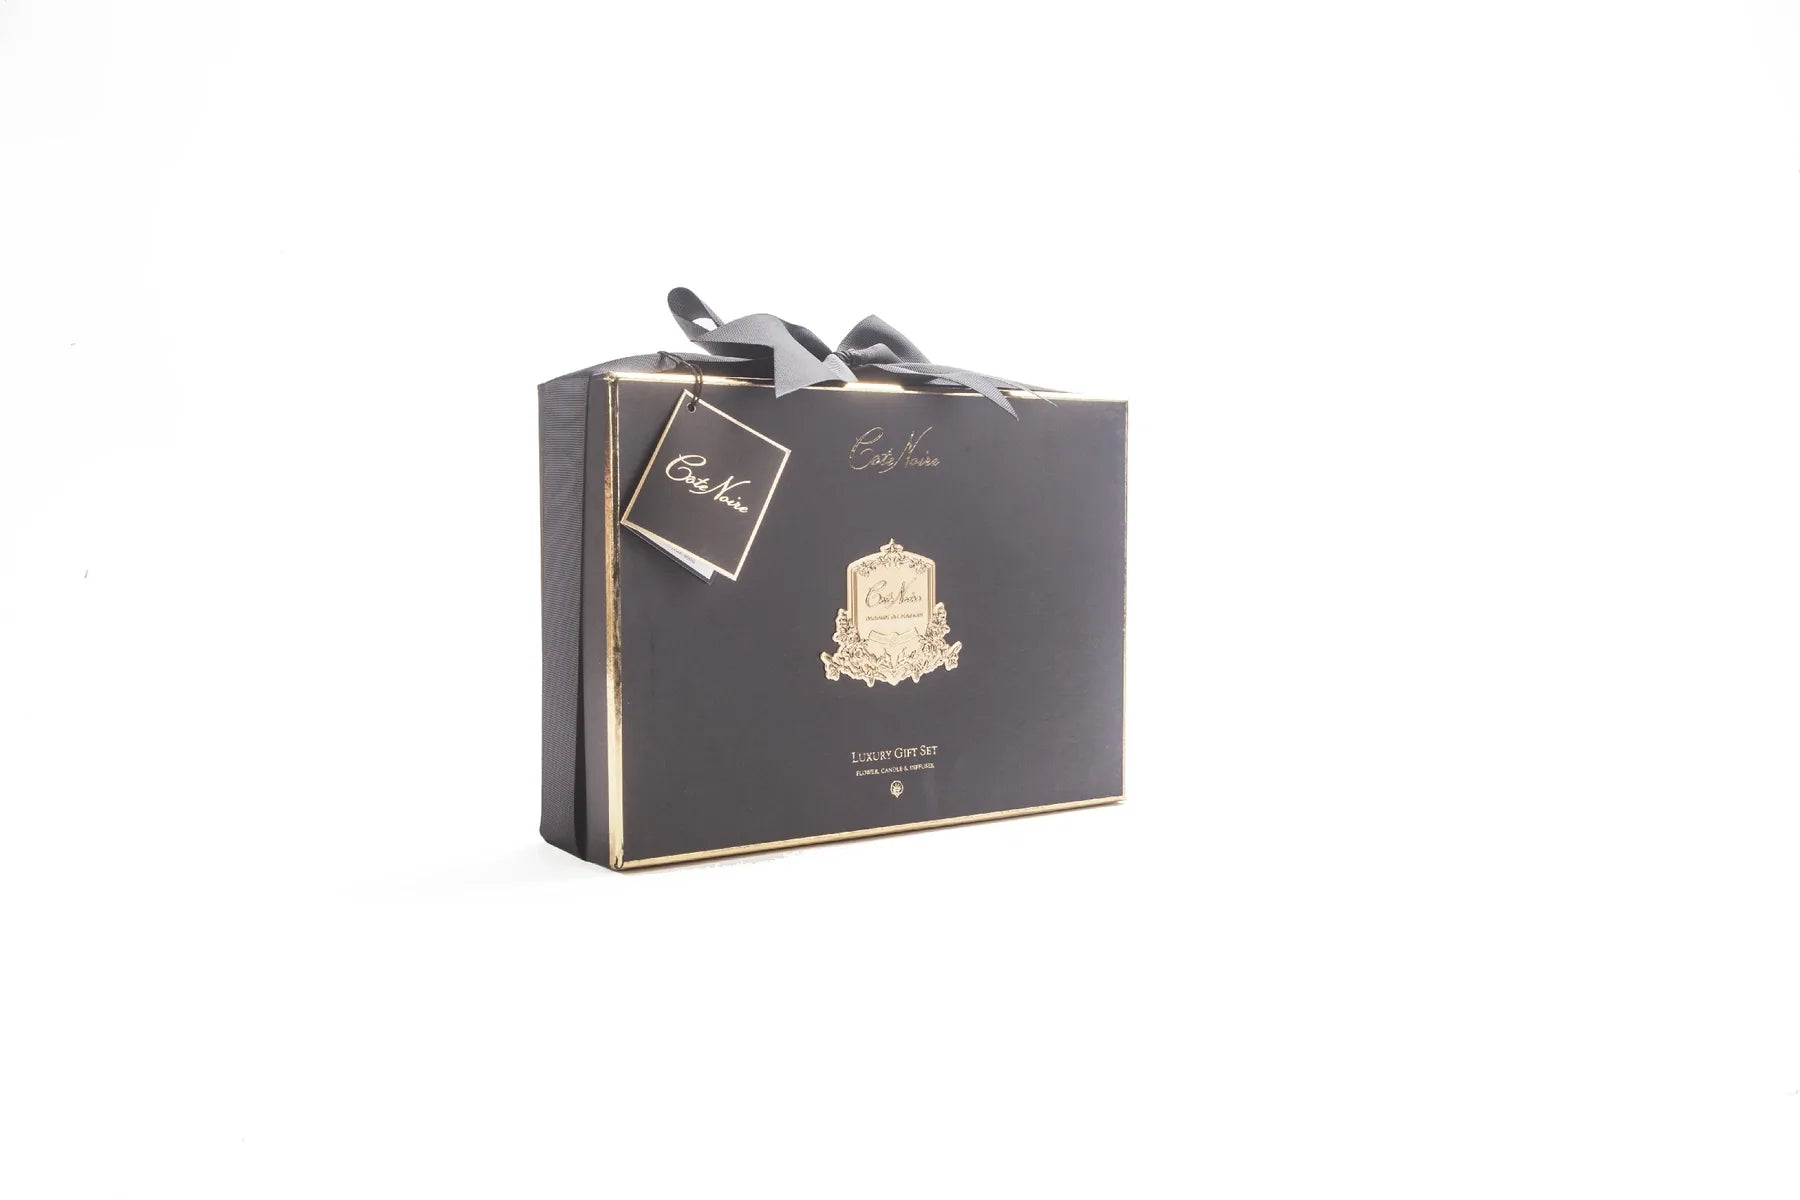 edle schwarz-goldene geschenkverpackung mit goldenem emblem und schwarzer schleife. weisser hintergrund.